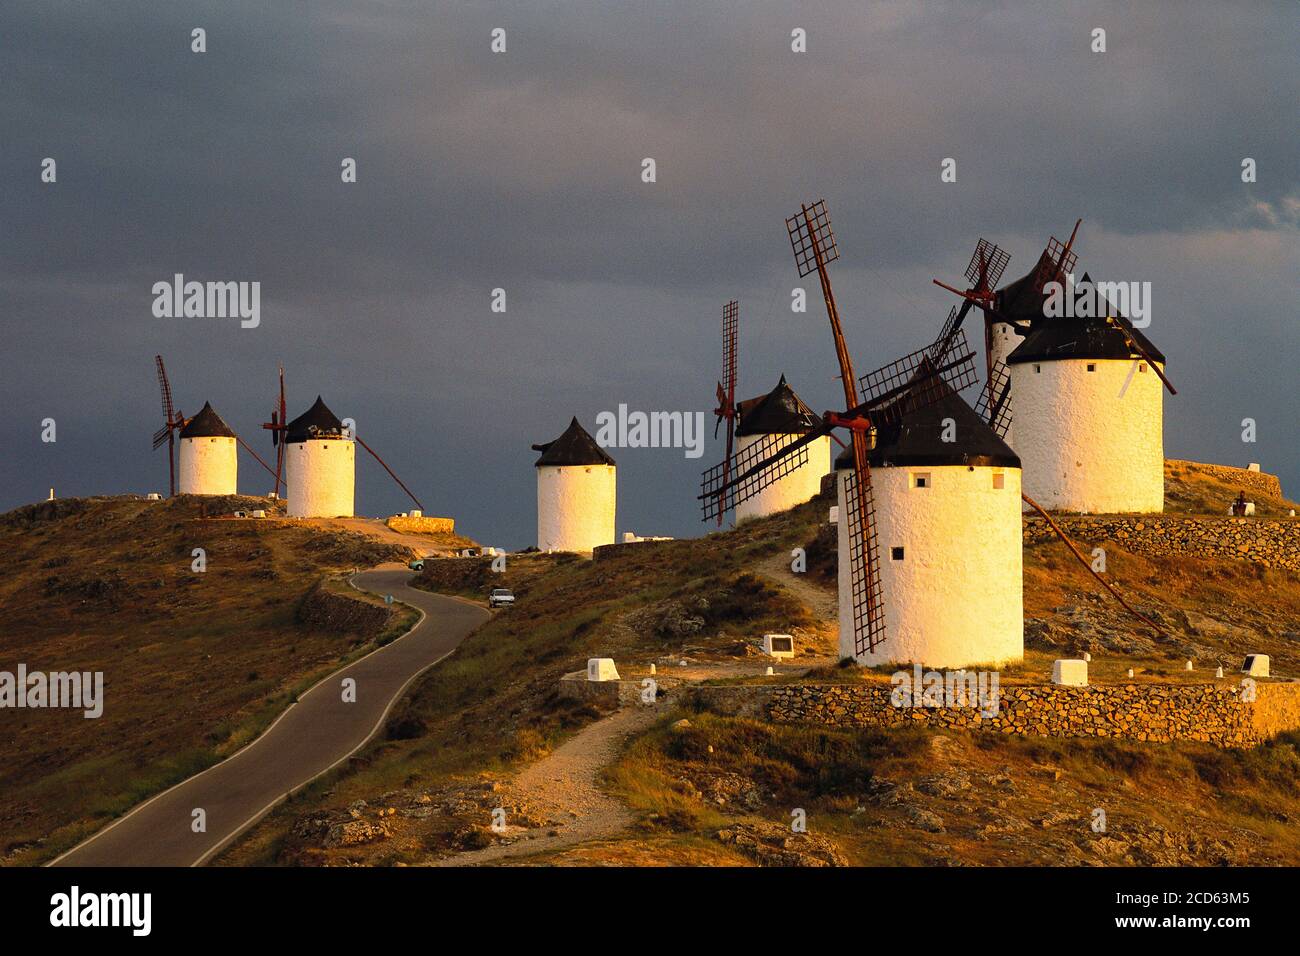 Antiguos molinos de viento tradicionales en las colinas, Consuegra, Castilla la Mancha, España Foto de stock